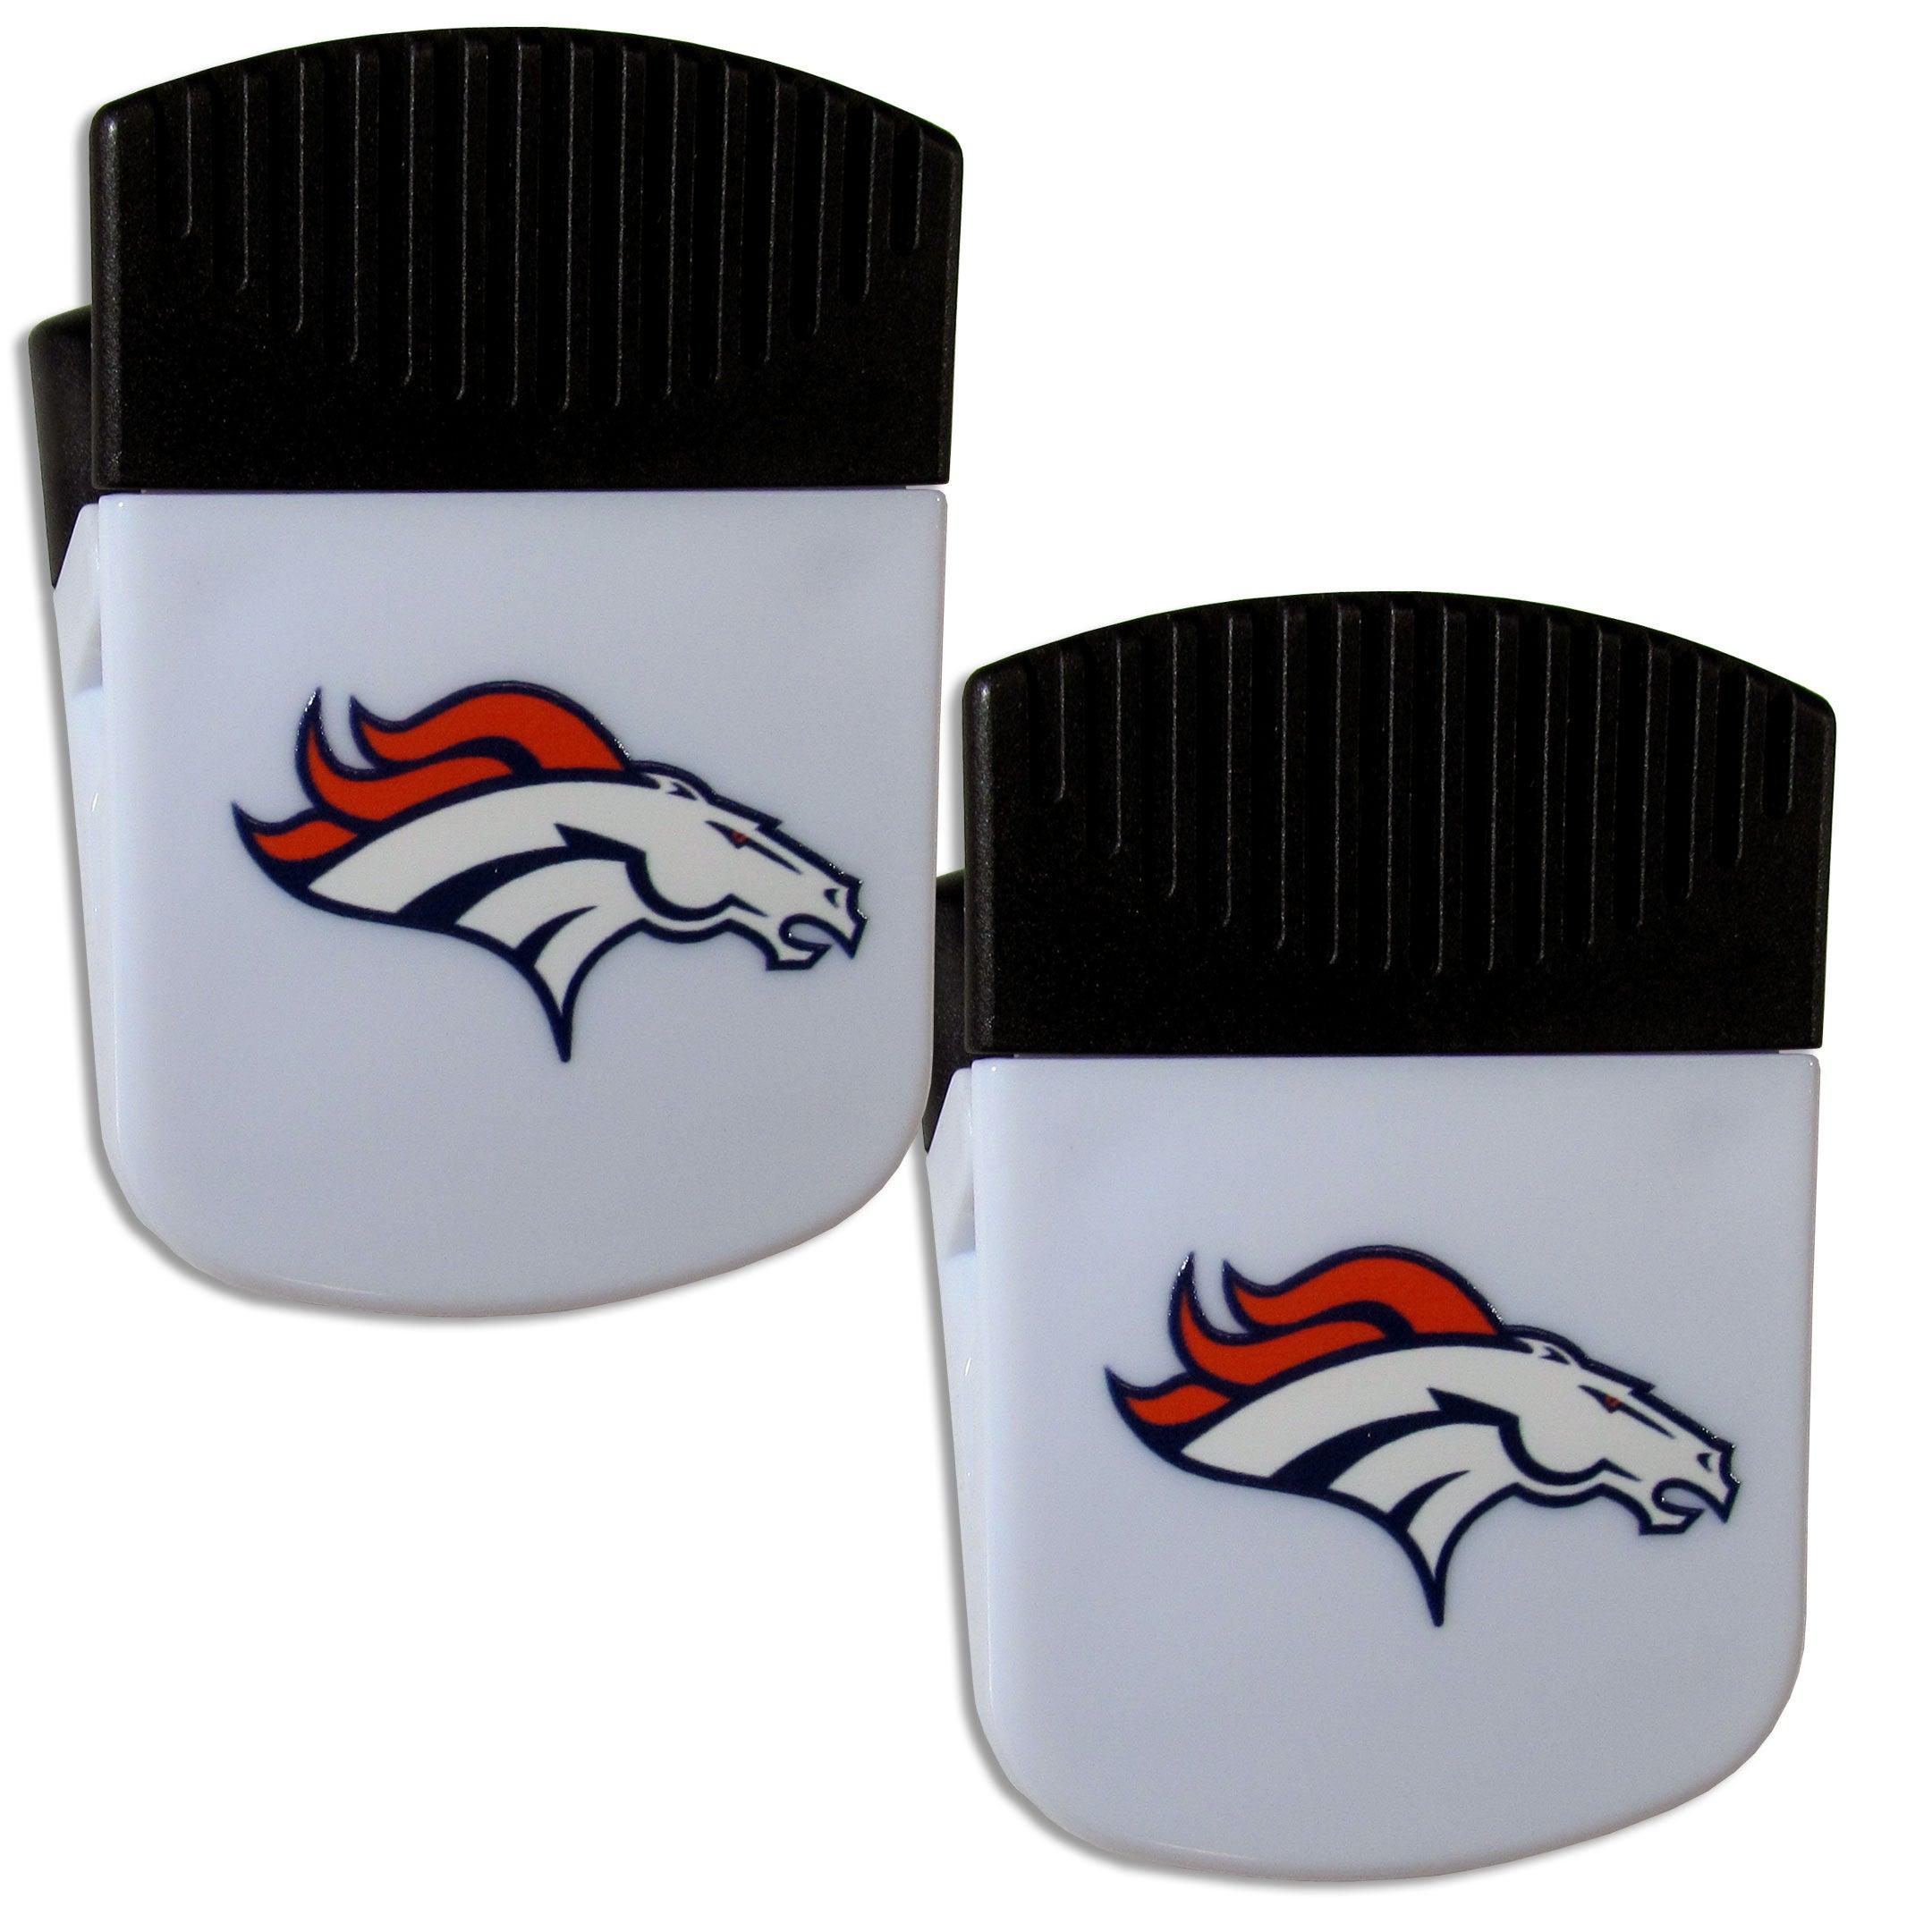 Denver Broncos Chip Clip Magnet with Bottle Opener, 2 pack - Flyclothing LLC